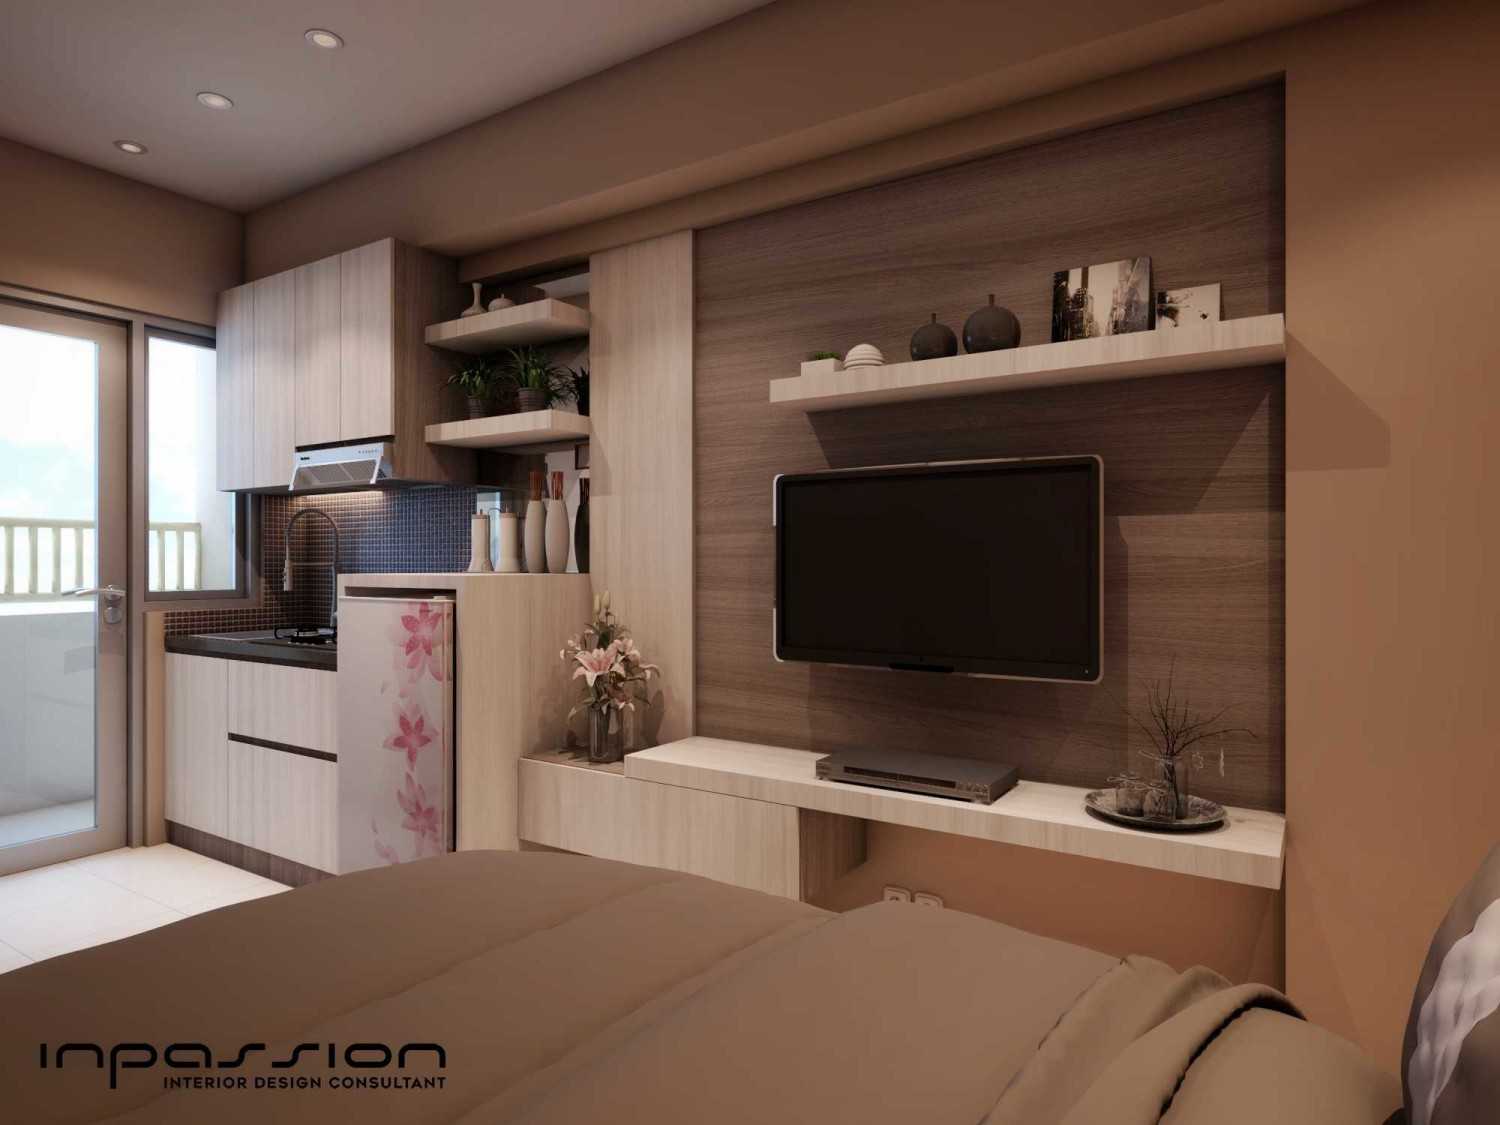 Ide Desain Interior Apartemen Tipe Studio Minimalis Dari Desain